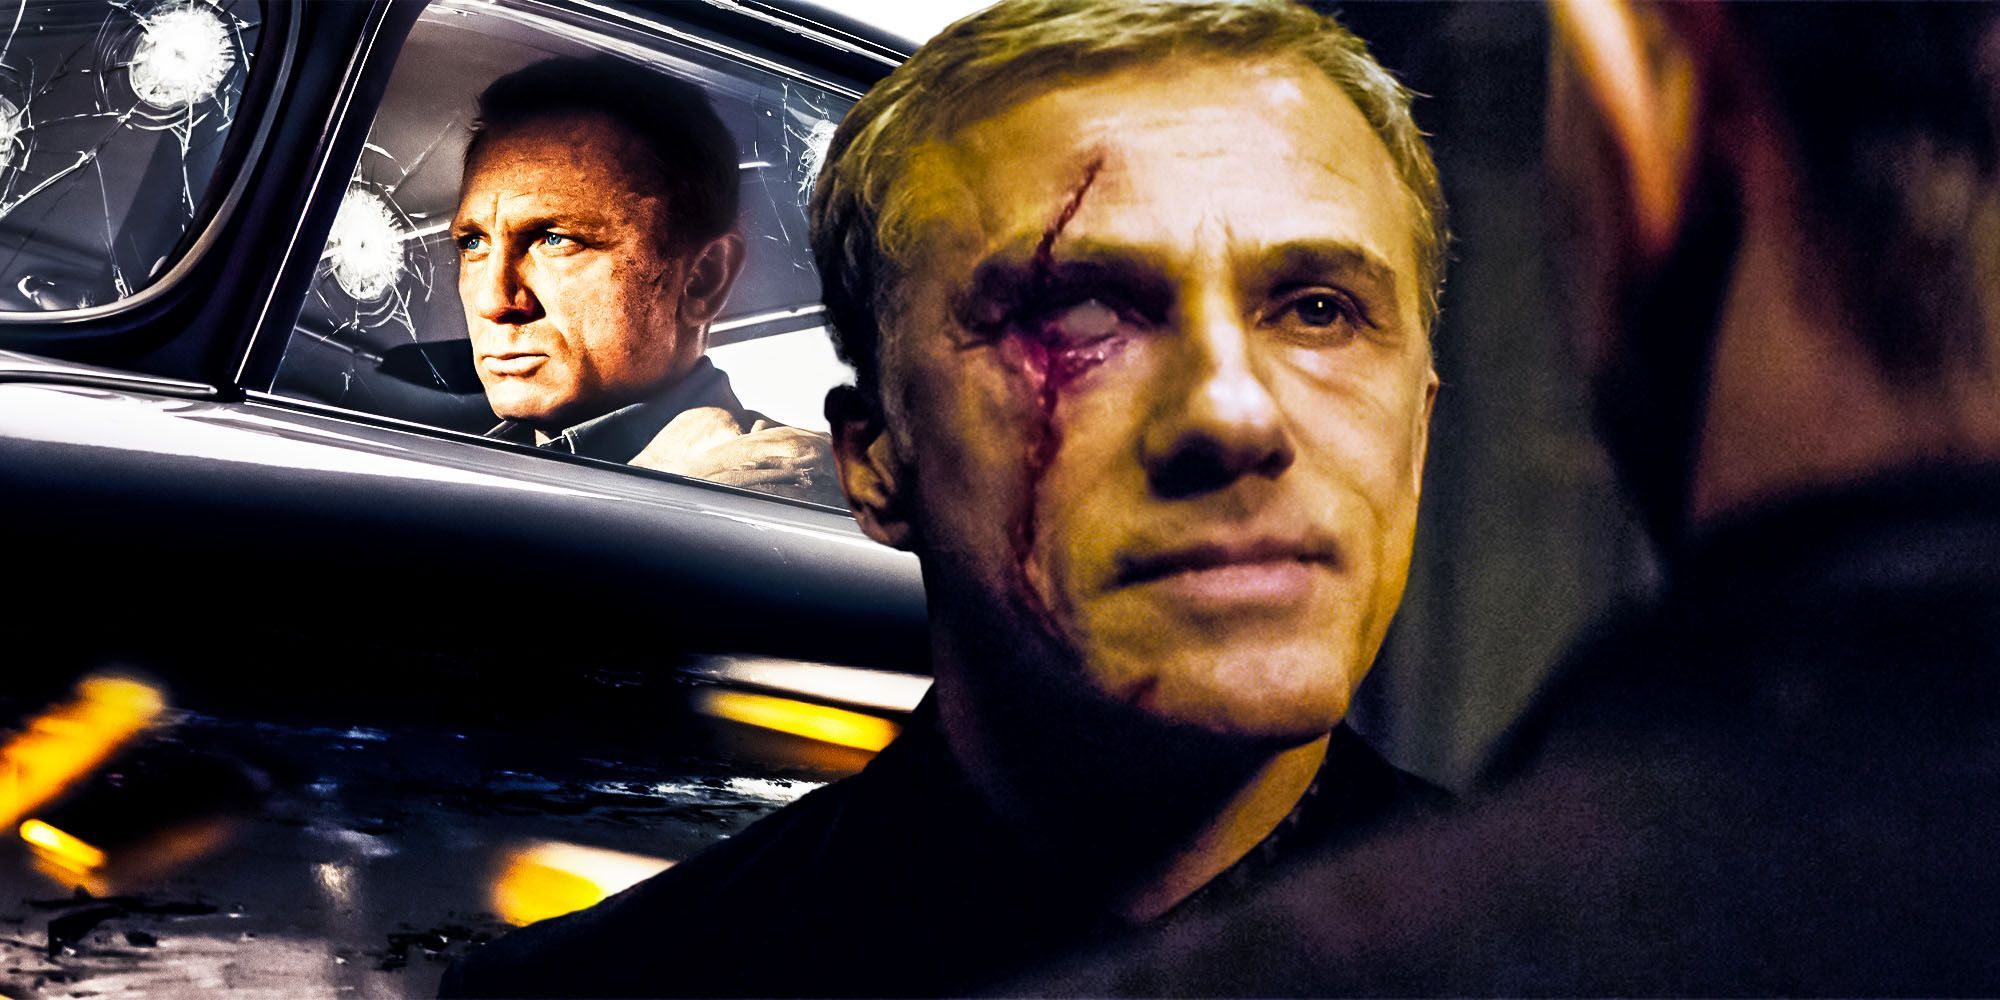 Blofeld Ruins Origin Story In Daniel Craig Bond Films